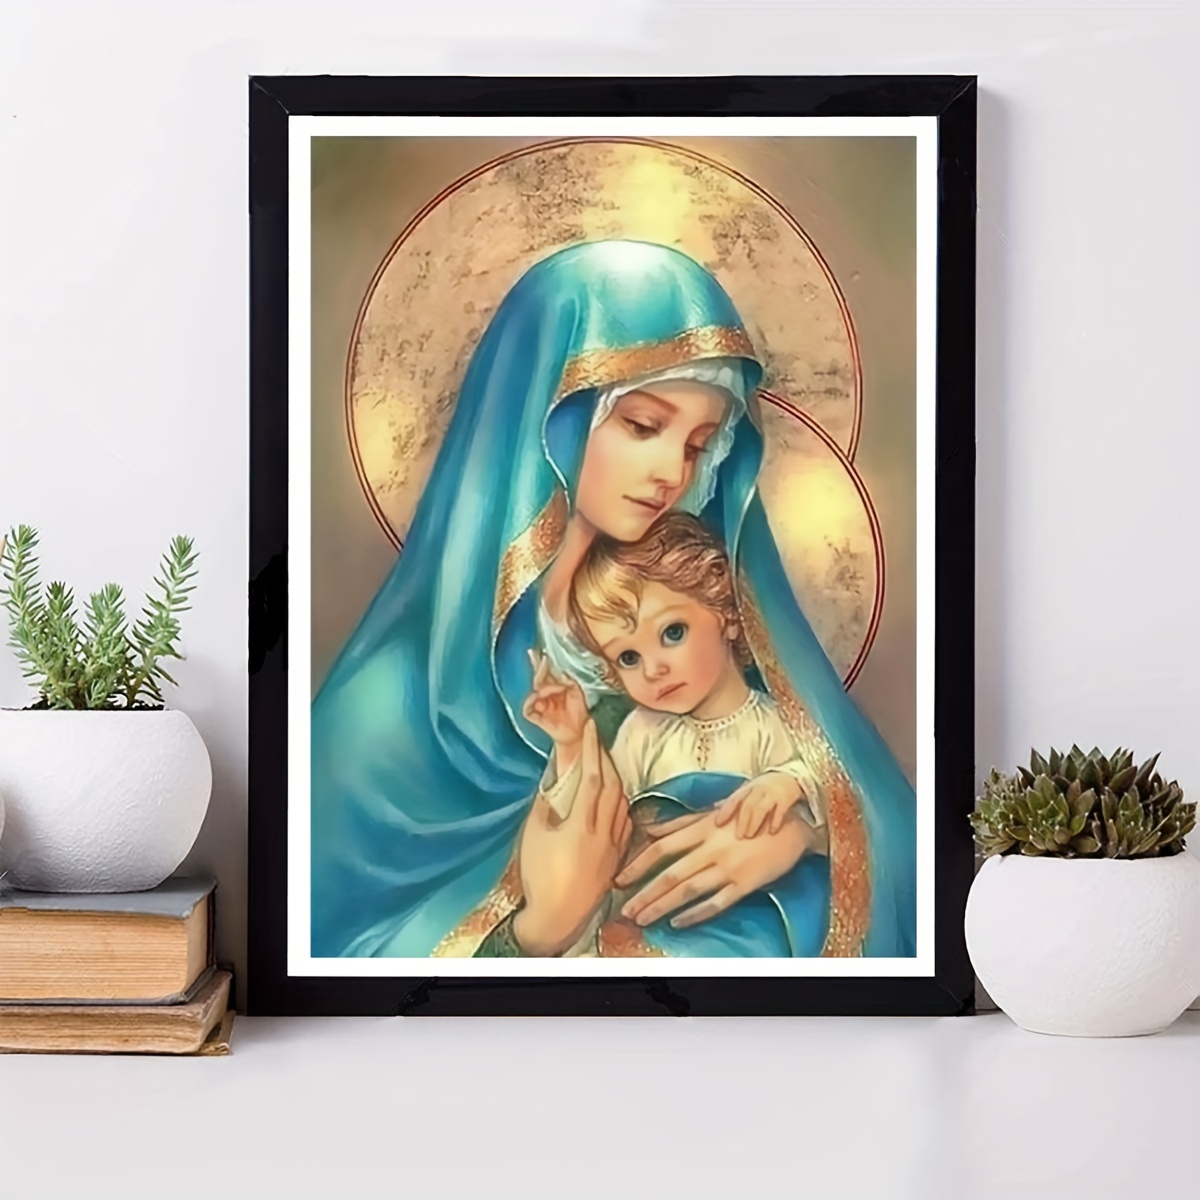 5D DIY My Diamond Art (Mother Mary and Baby Jesus) Diamond